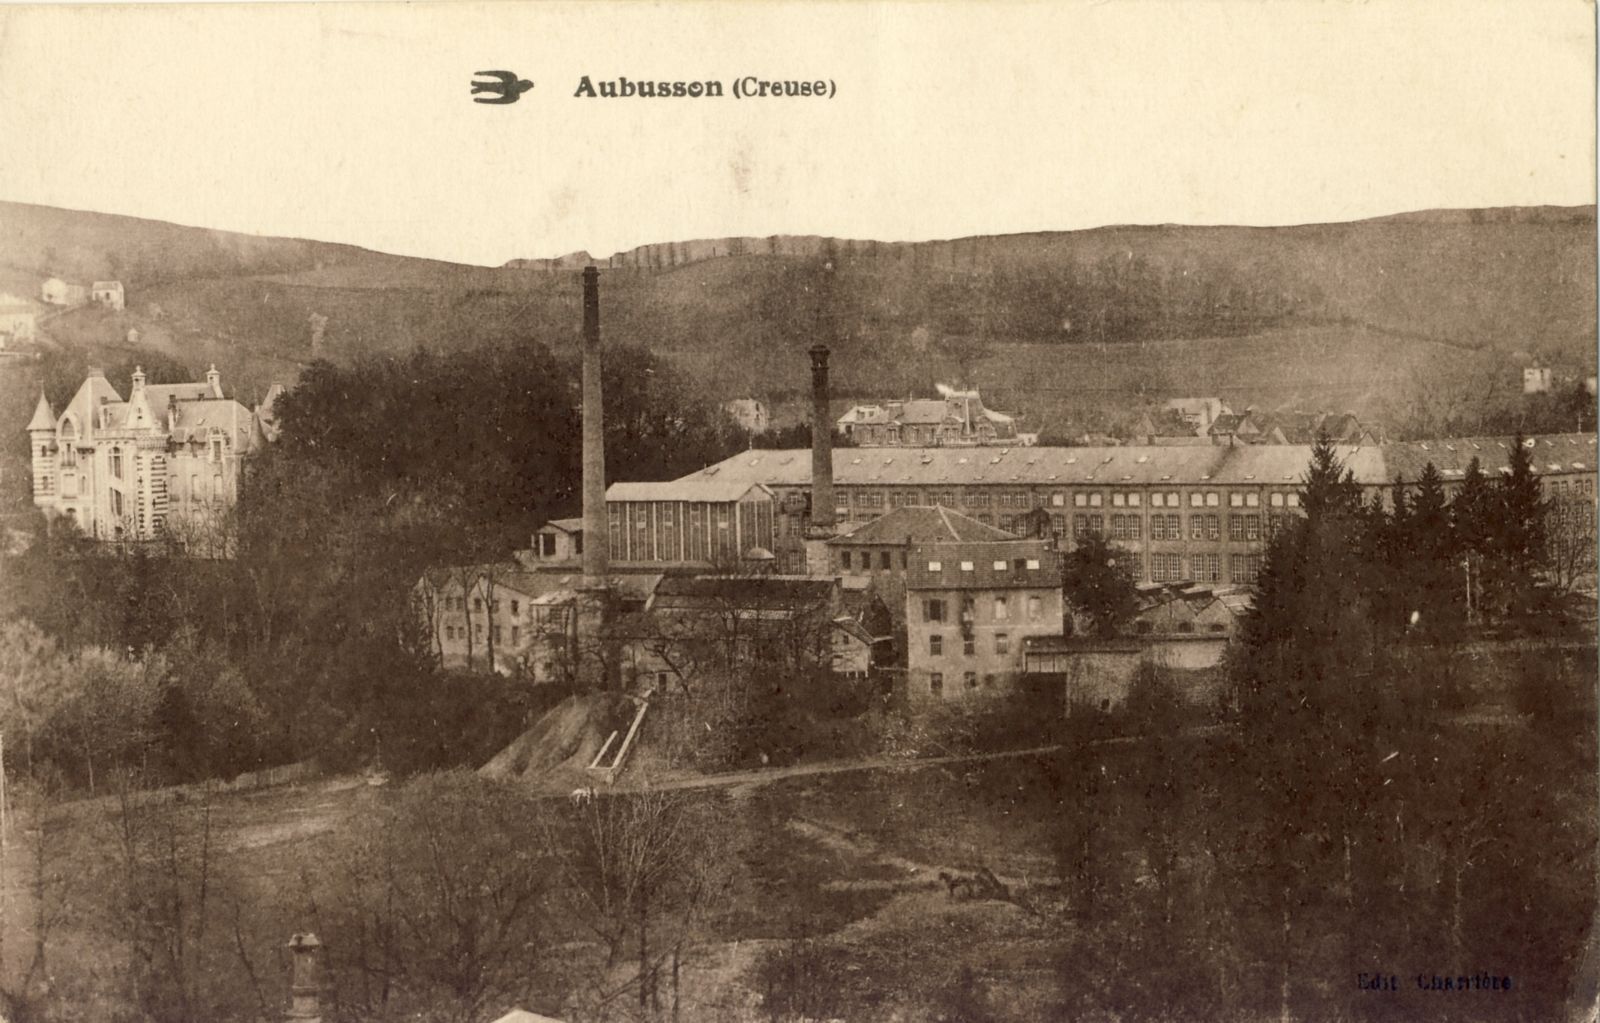 Carte postale des usines Sallandrouze au début du 20e siècle, avec les terrains vagues qui l'entouraient jusqu'à la Creuse et, à gauche, le château Saint-Jean (collection particulière)